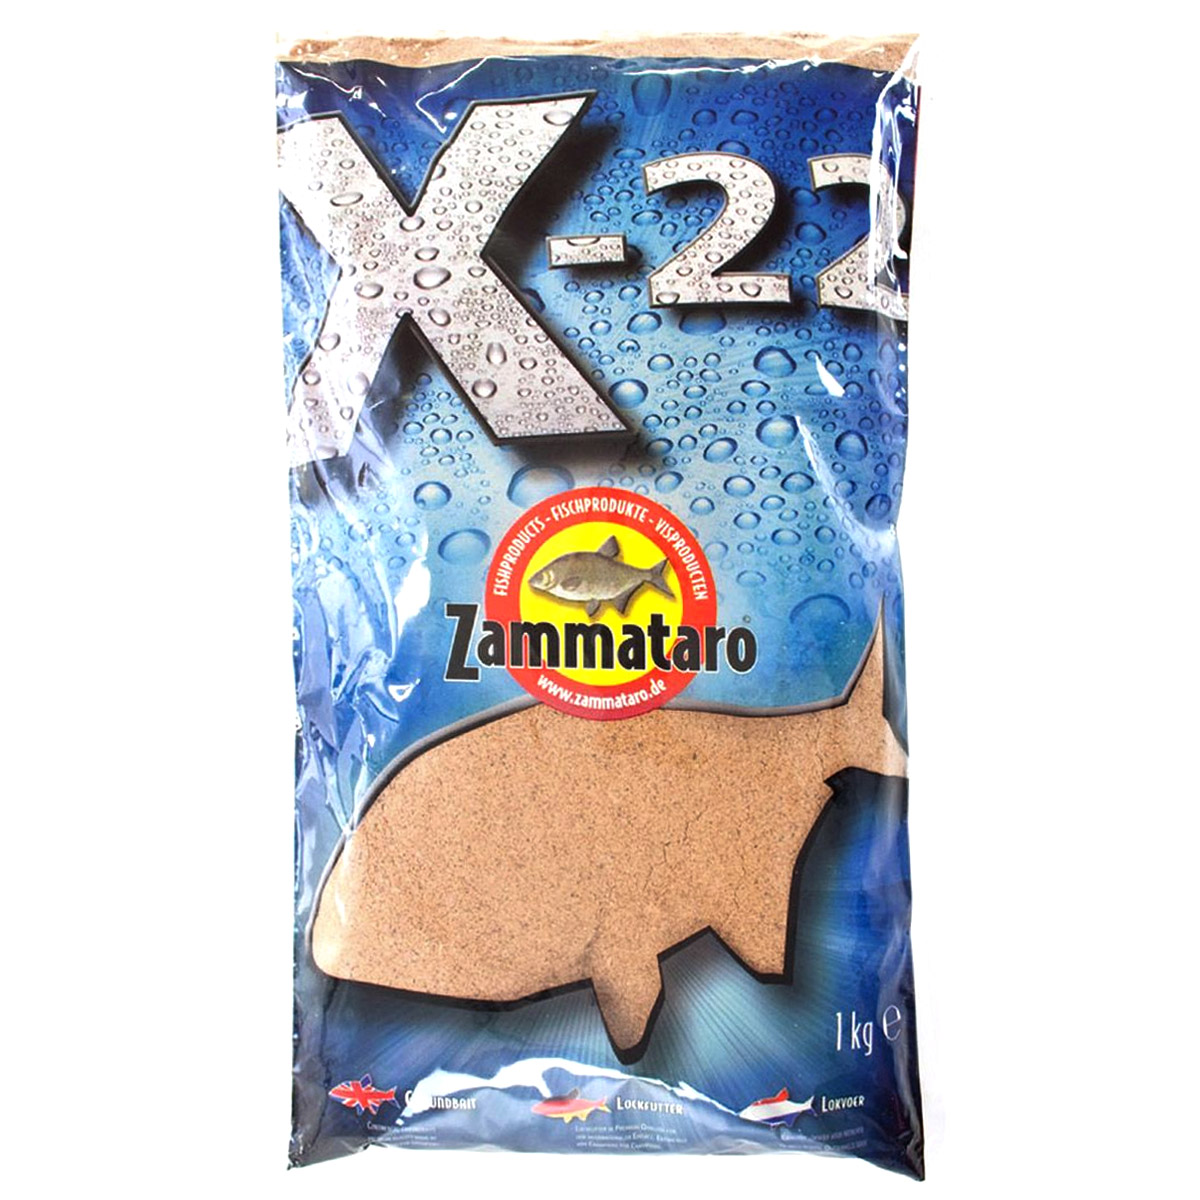 Zammataro X22 Naturel 1 kg